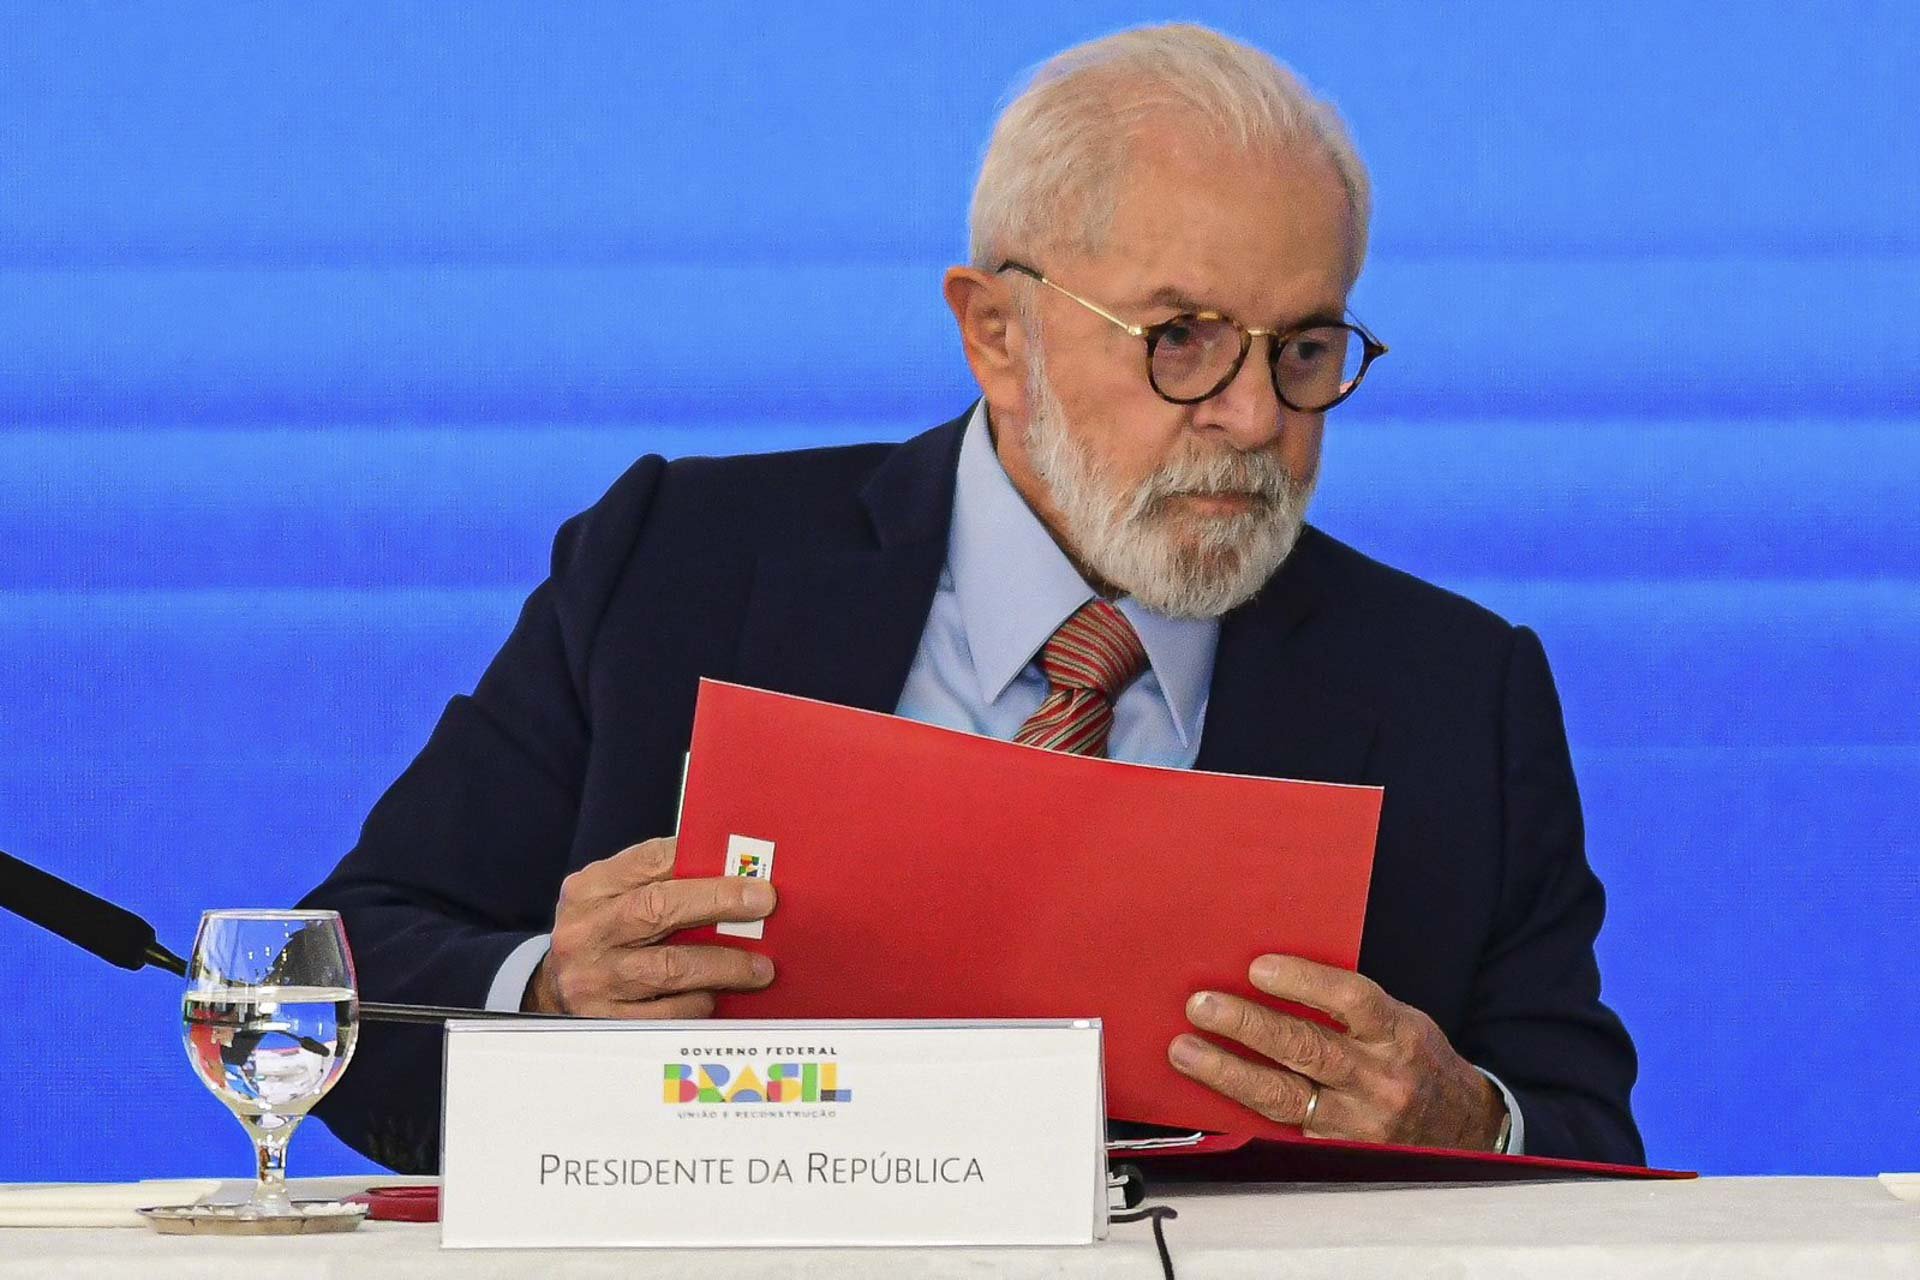 Imagem colorida do ex-presidente Lula usando óculos e segurando uma pasta vermelha - Metrópoles